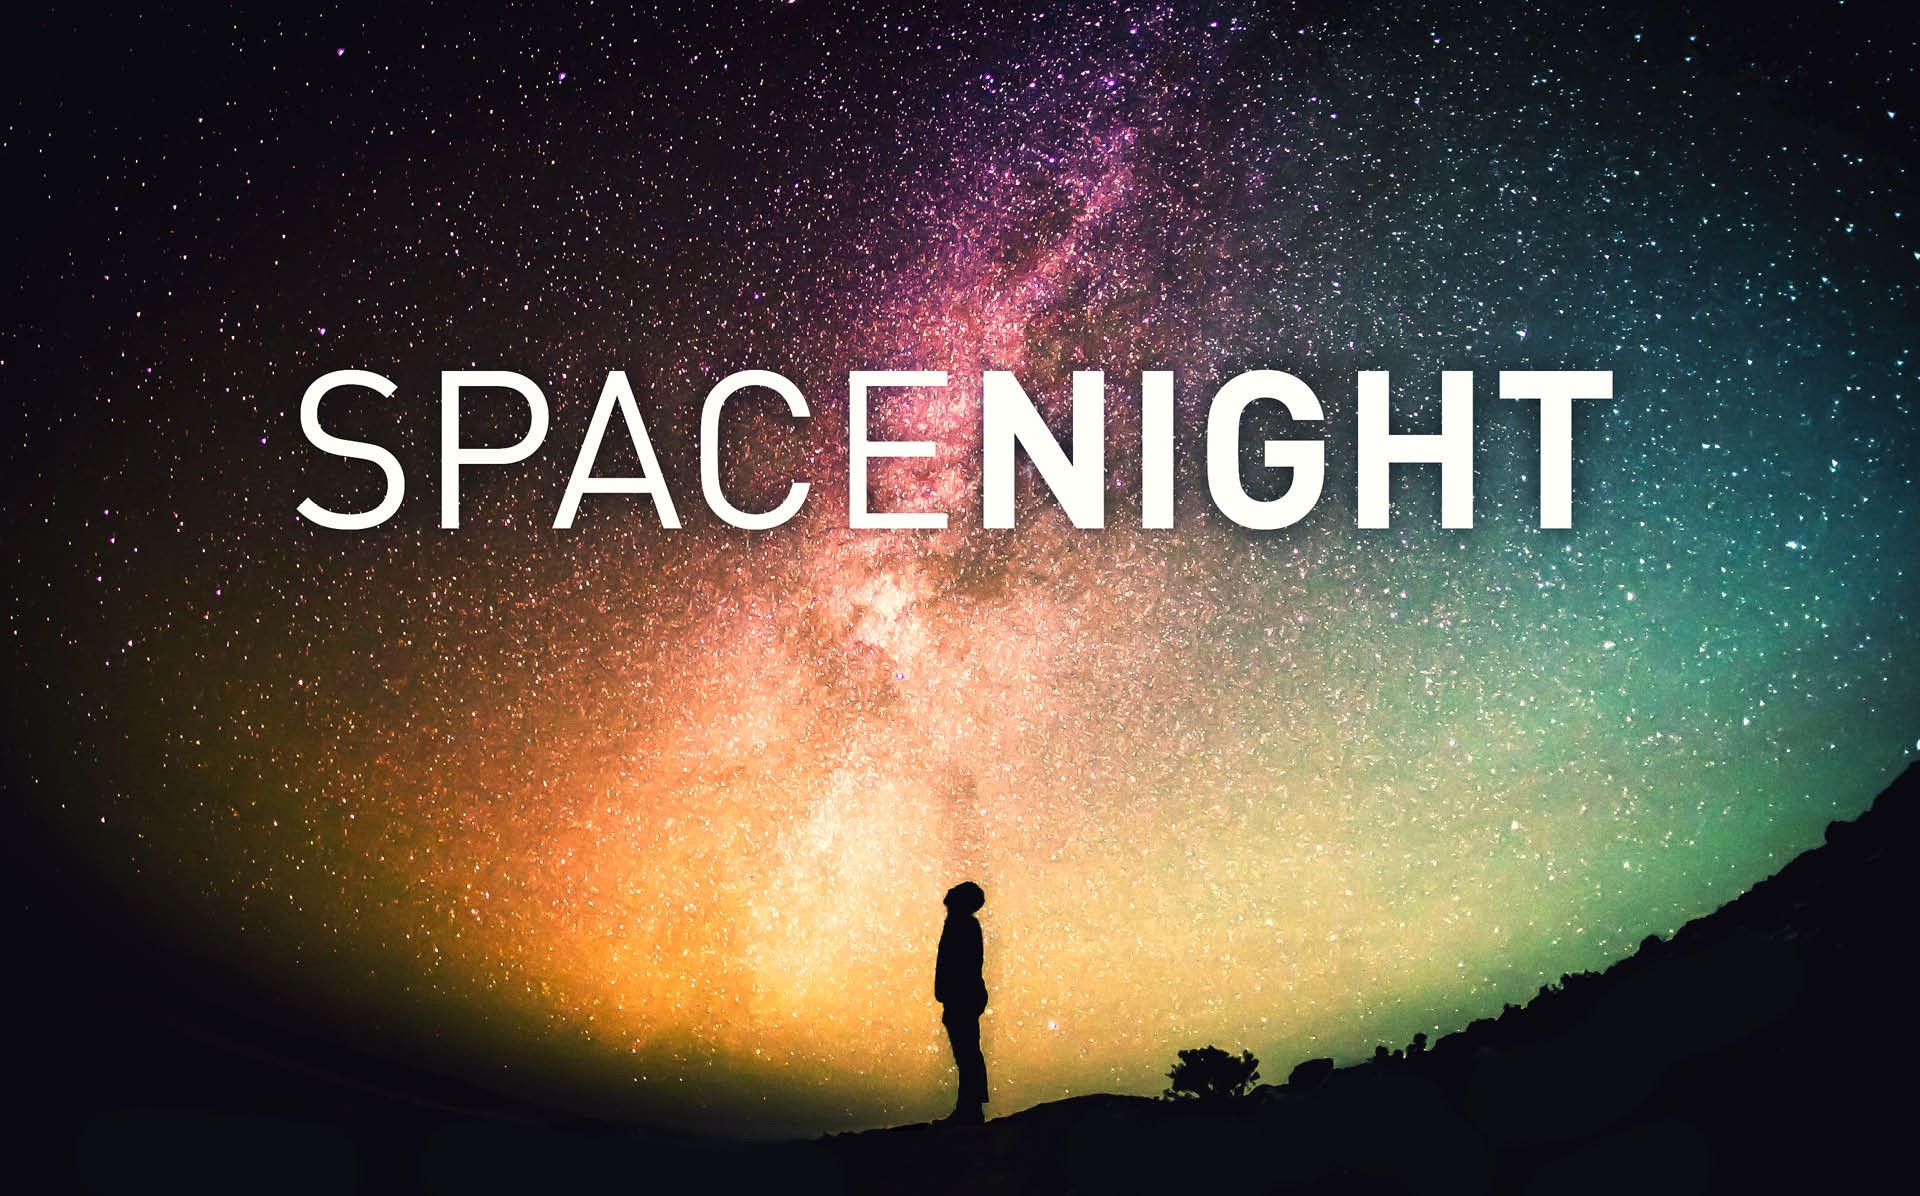 SpaceNight